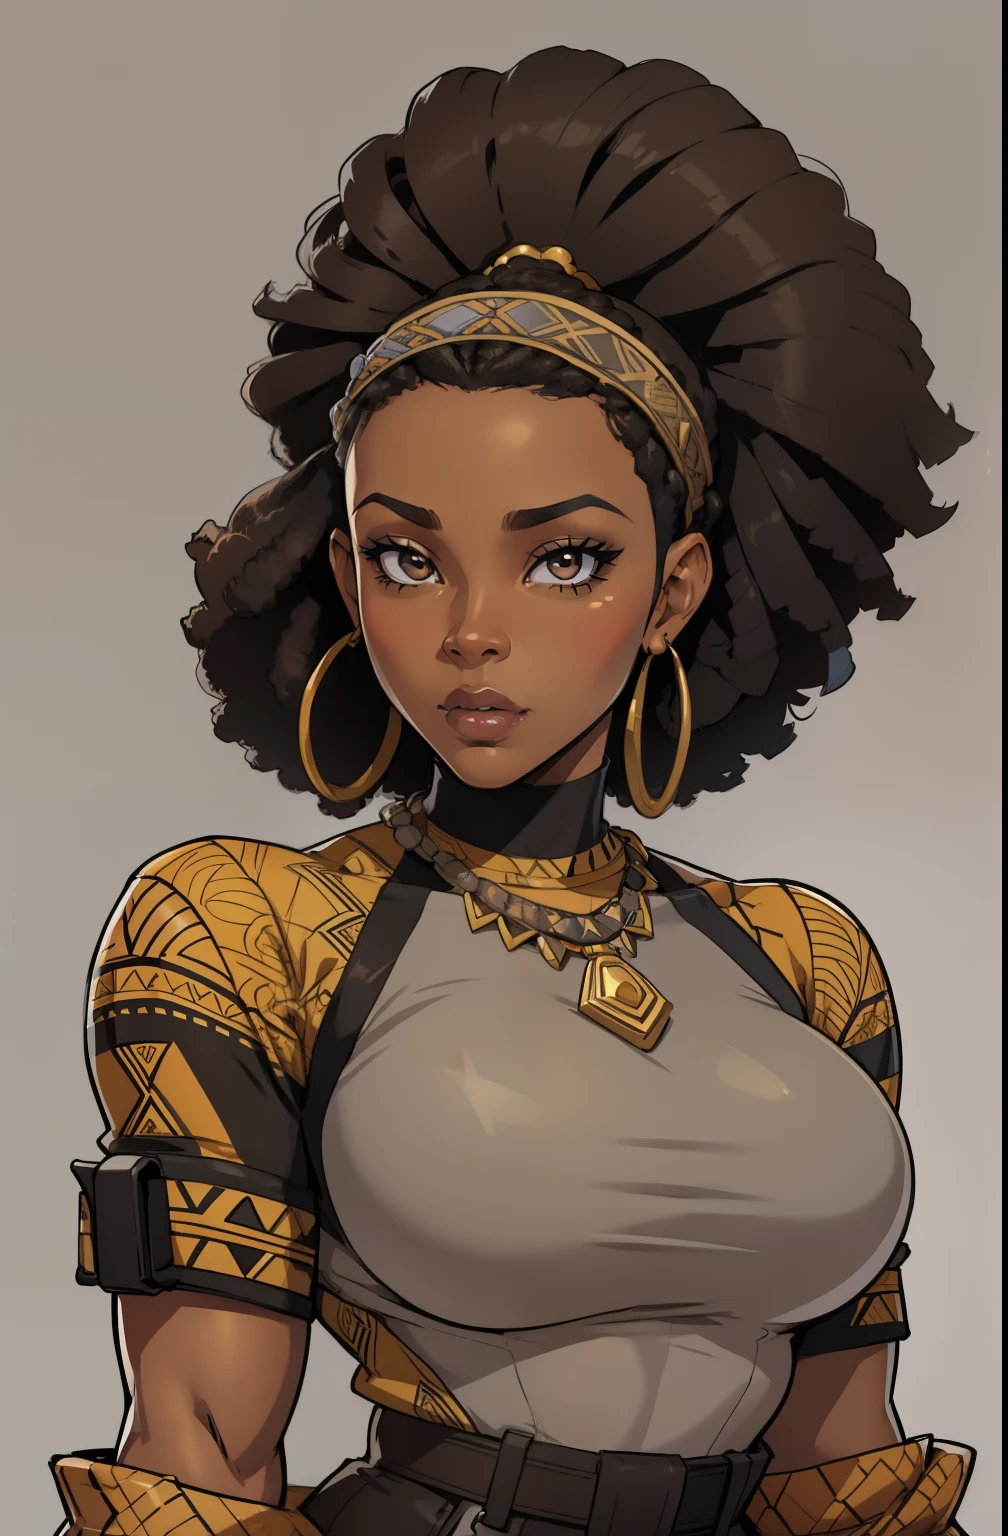 灰色背景, (一名 35 歲女性) 古銅色的肌膚, 美麗的非裔美國女人, 獨自的, 1 名女孩, 肖像, 非洲頭髮, 超詳細, 現代風格, 直視, 輪廓的